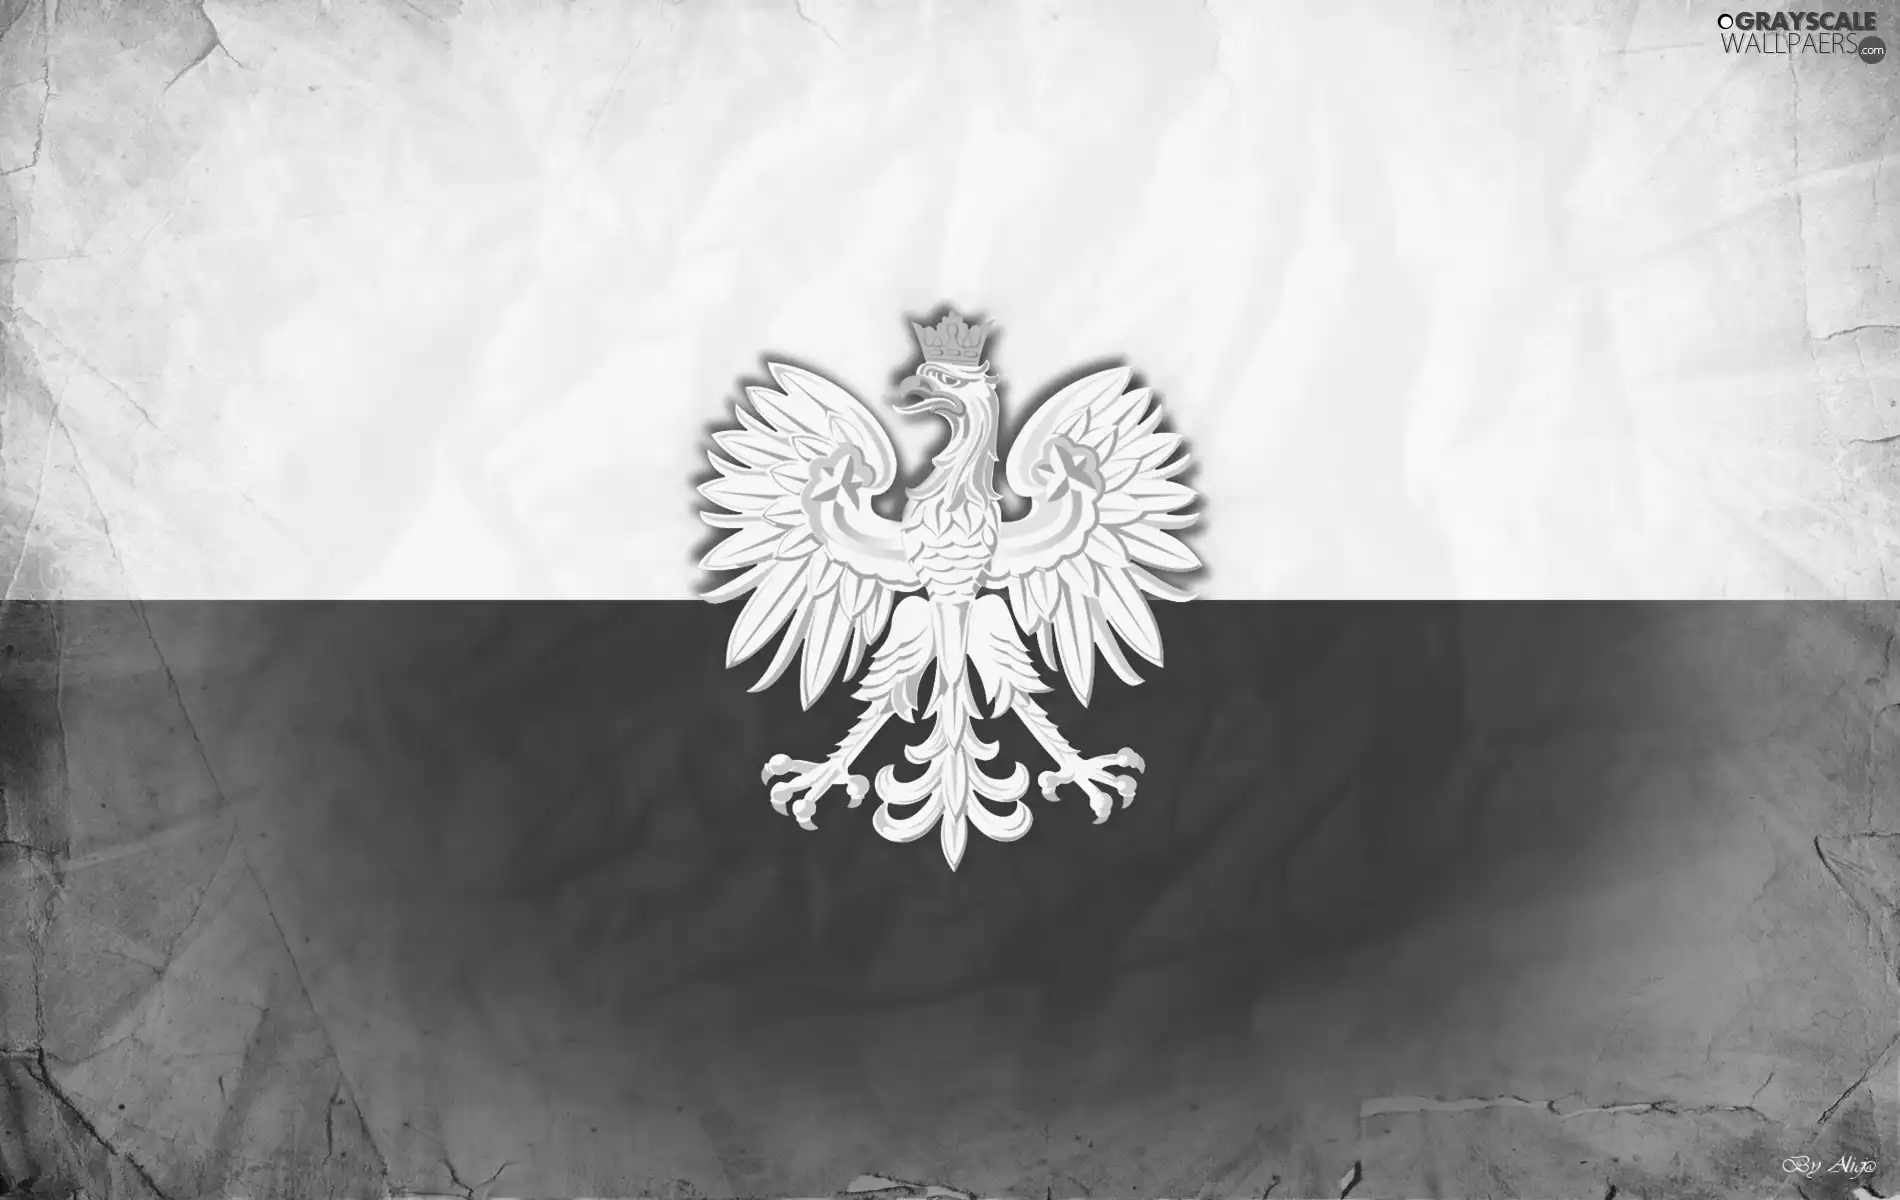 emblem, Poland, flag